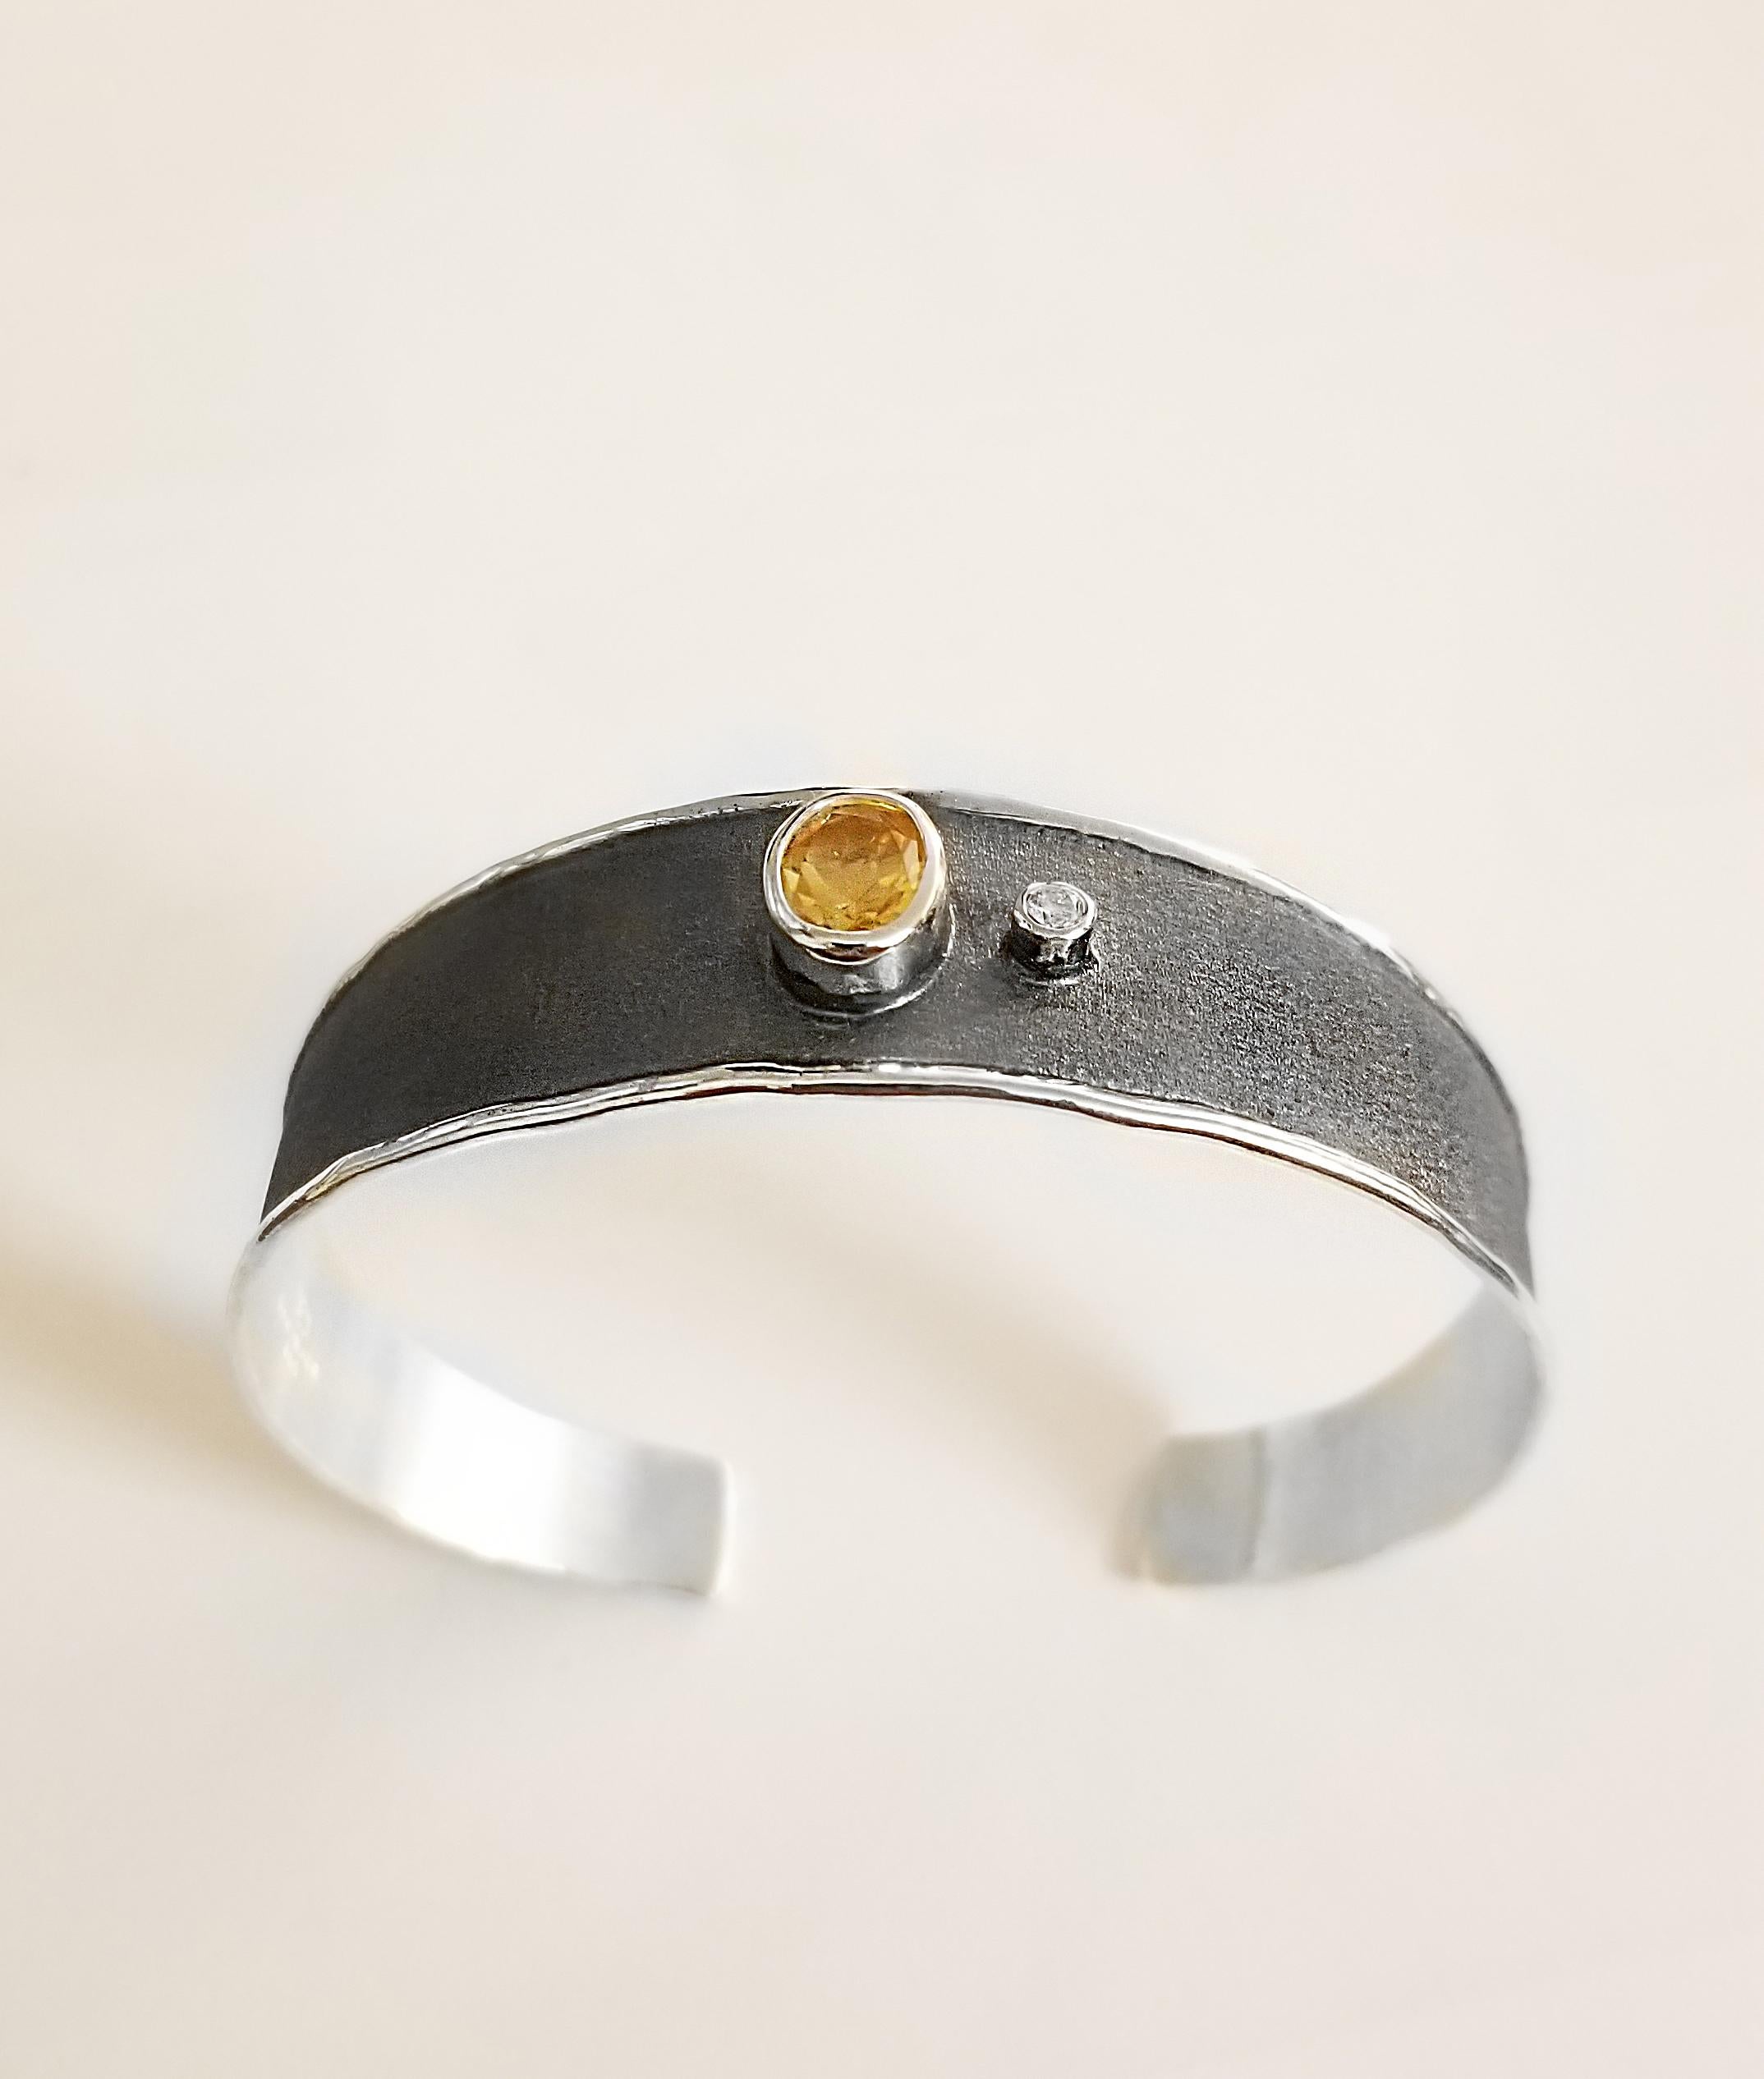 Yianni Creations Hephestos Collection 100% handgefertigtes Armband aus Feinsilber mit 1,25 Karat Citrin im Ovalschliff und 0,03 Karat Diamant im Brillantschliff auf schwarz oxidiertem Rhodium Hintergrund. Die Edelsteine werden durch einzigartige